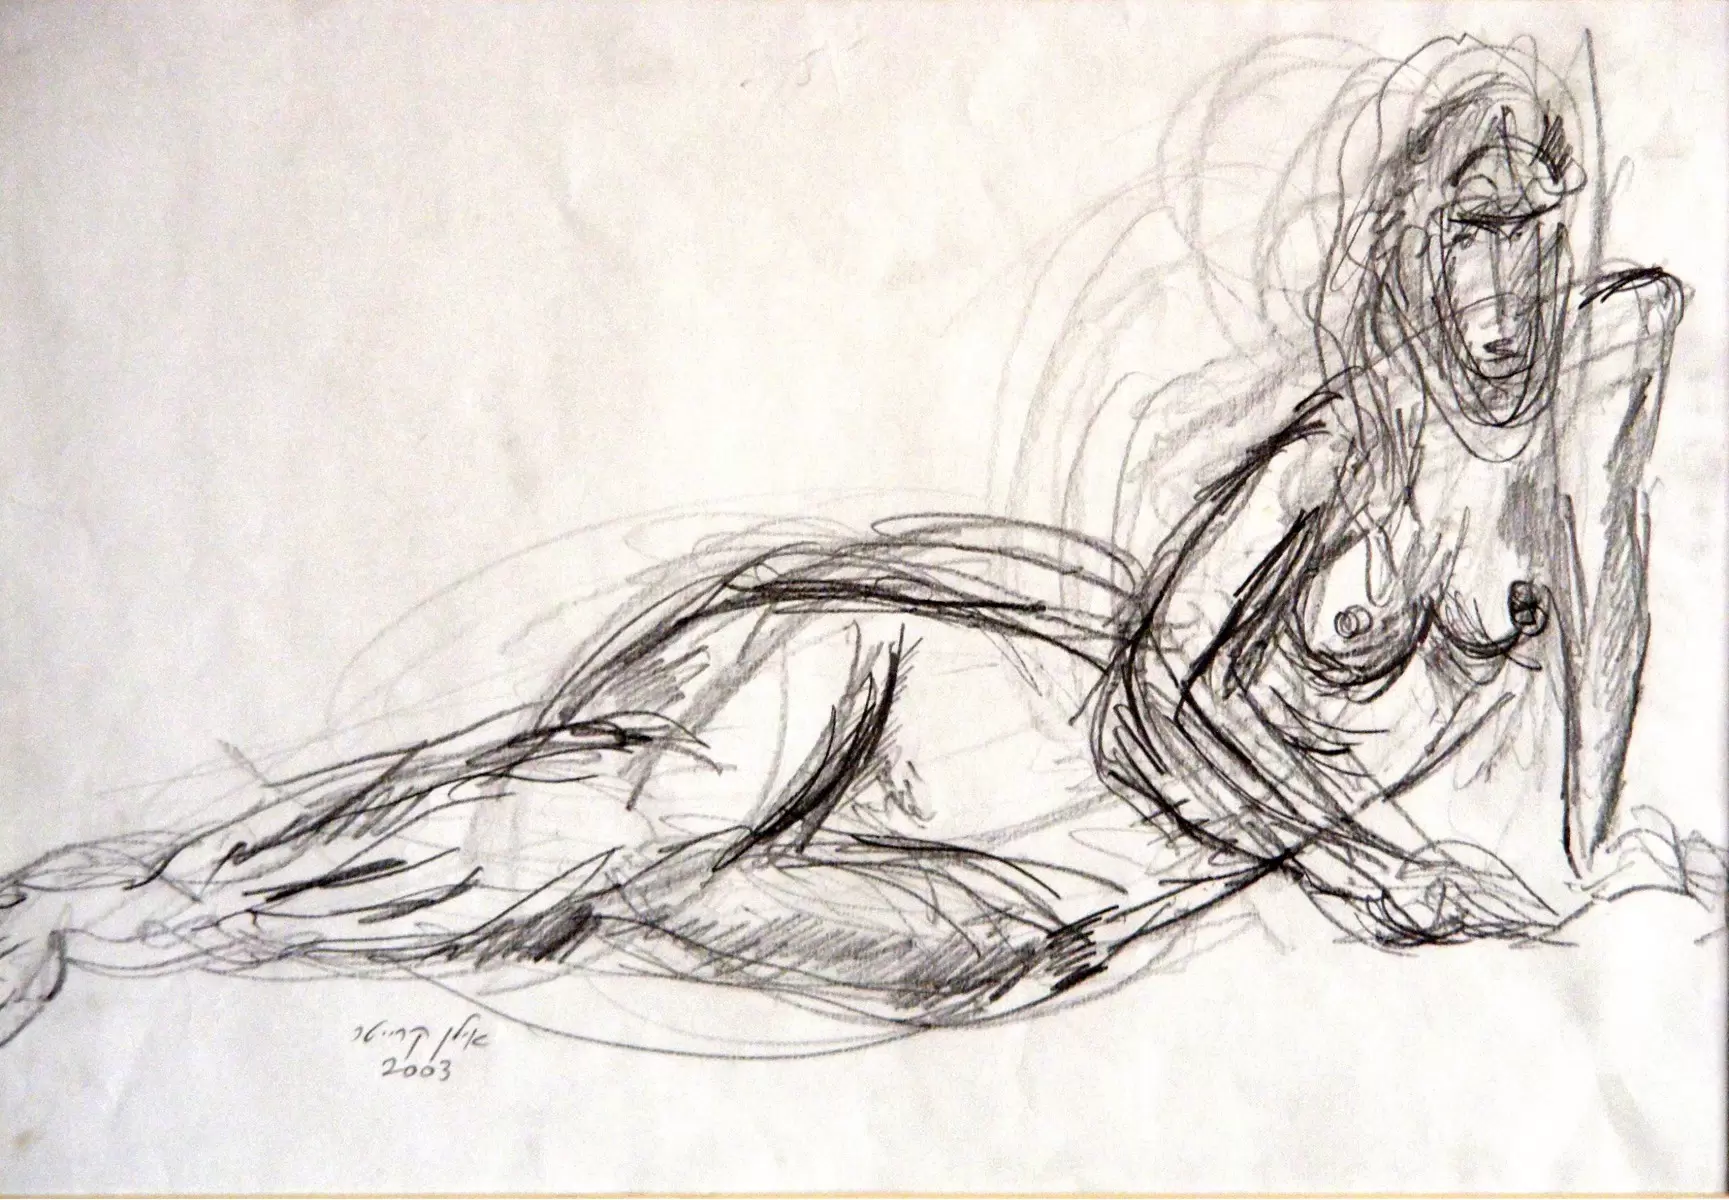 אישה בעירום רישום בעיפרון - עוד קרייטר - איור רישום בשחור ולבן  - מק''ט: 85649